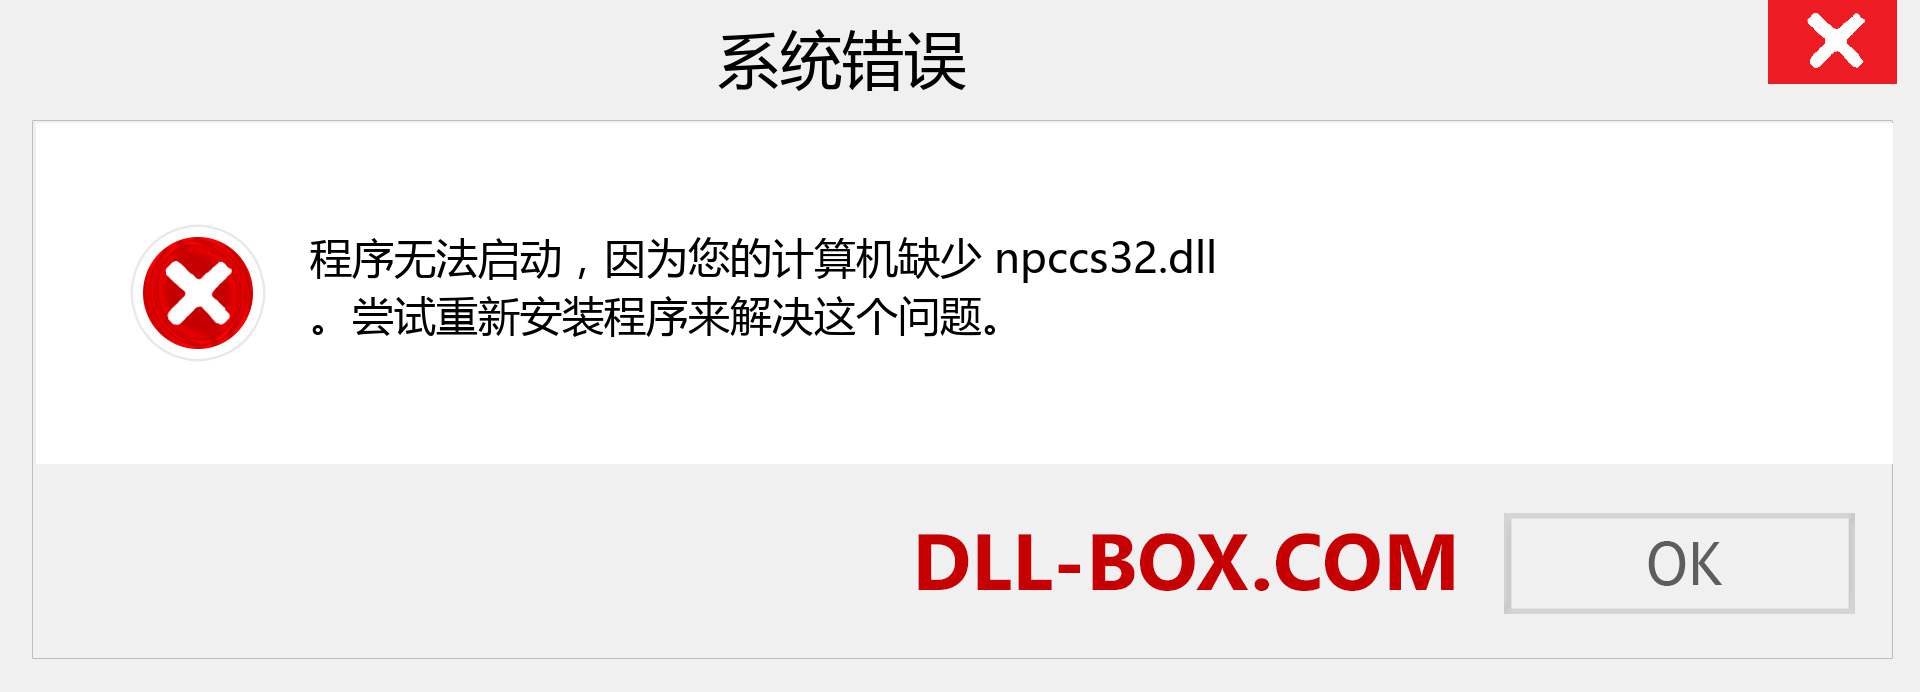 npccs32.dll 文件丢失？。 适用于 Windows 7、8、10 的下载 - 修复 Windows、照片、图像上的 npccs32 dll 丢失错误